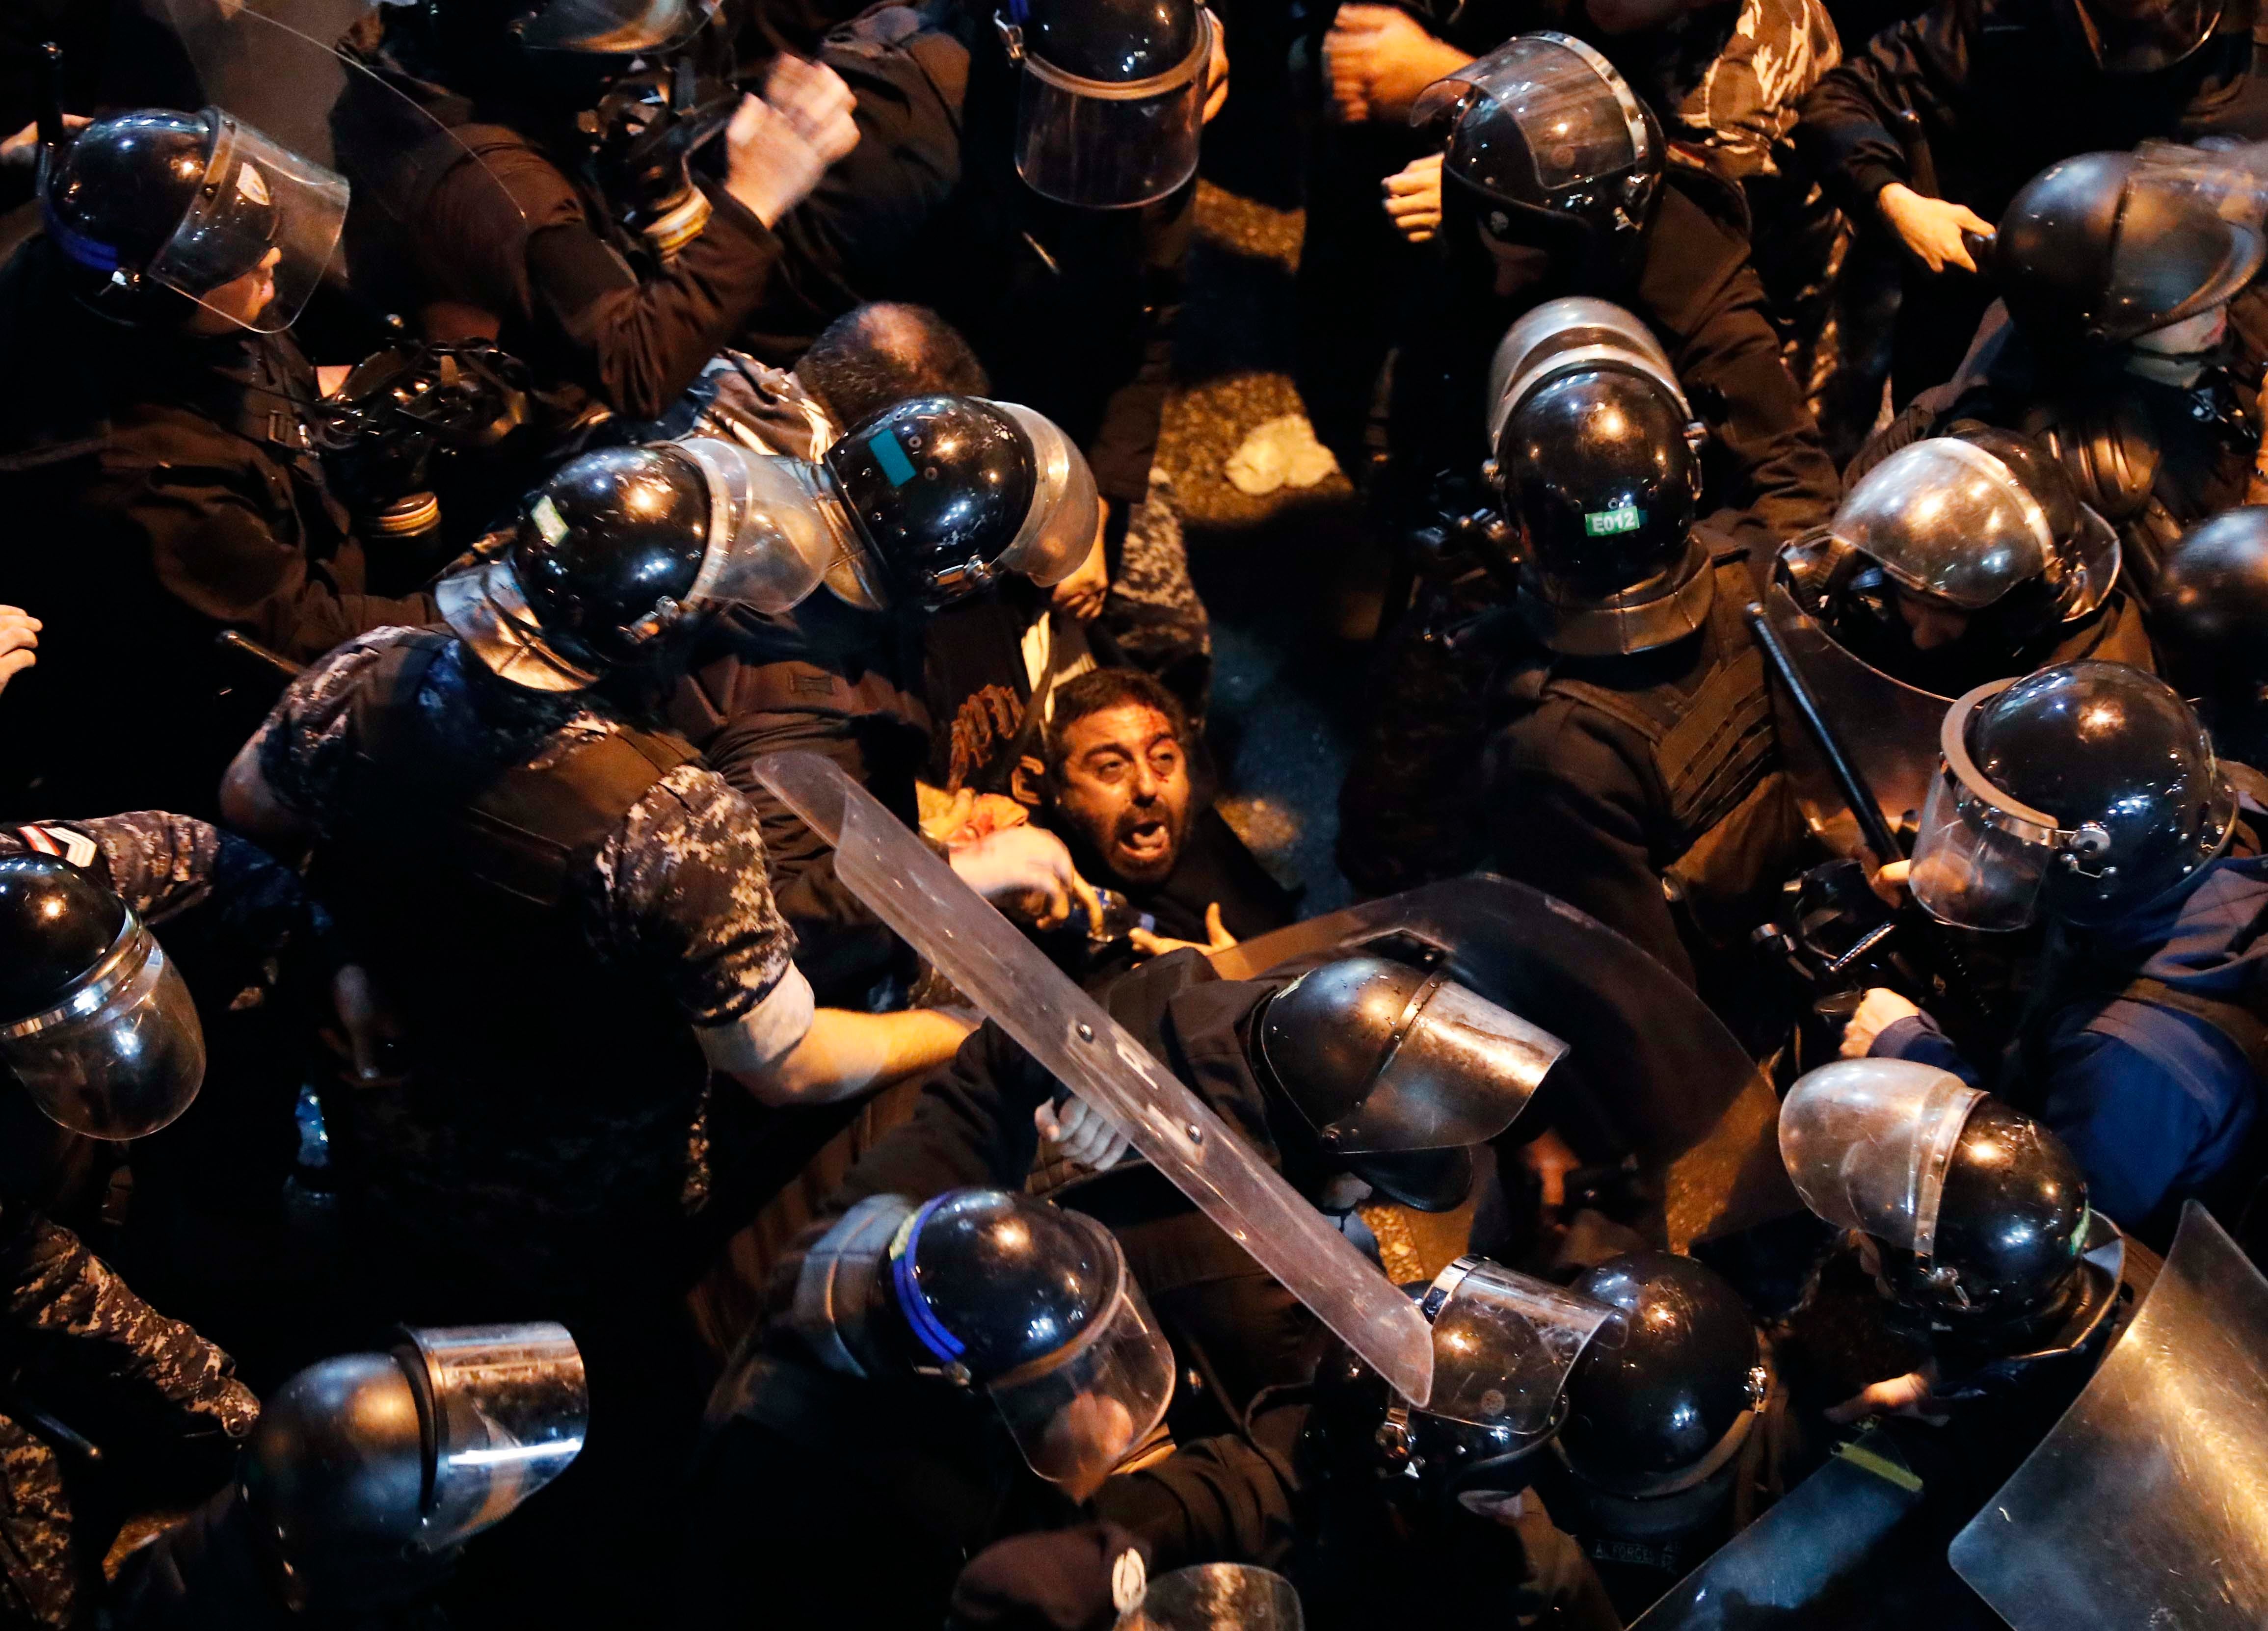 قوات مكافحة الشغب تعتقل متظاهرا أمام "ثكنة الحلو" في بيروت، لبنان، 15 يناير/كانون الثاني 2020. 